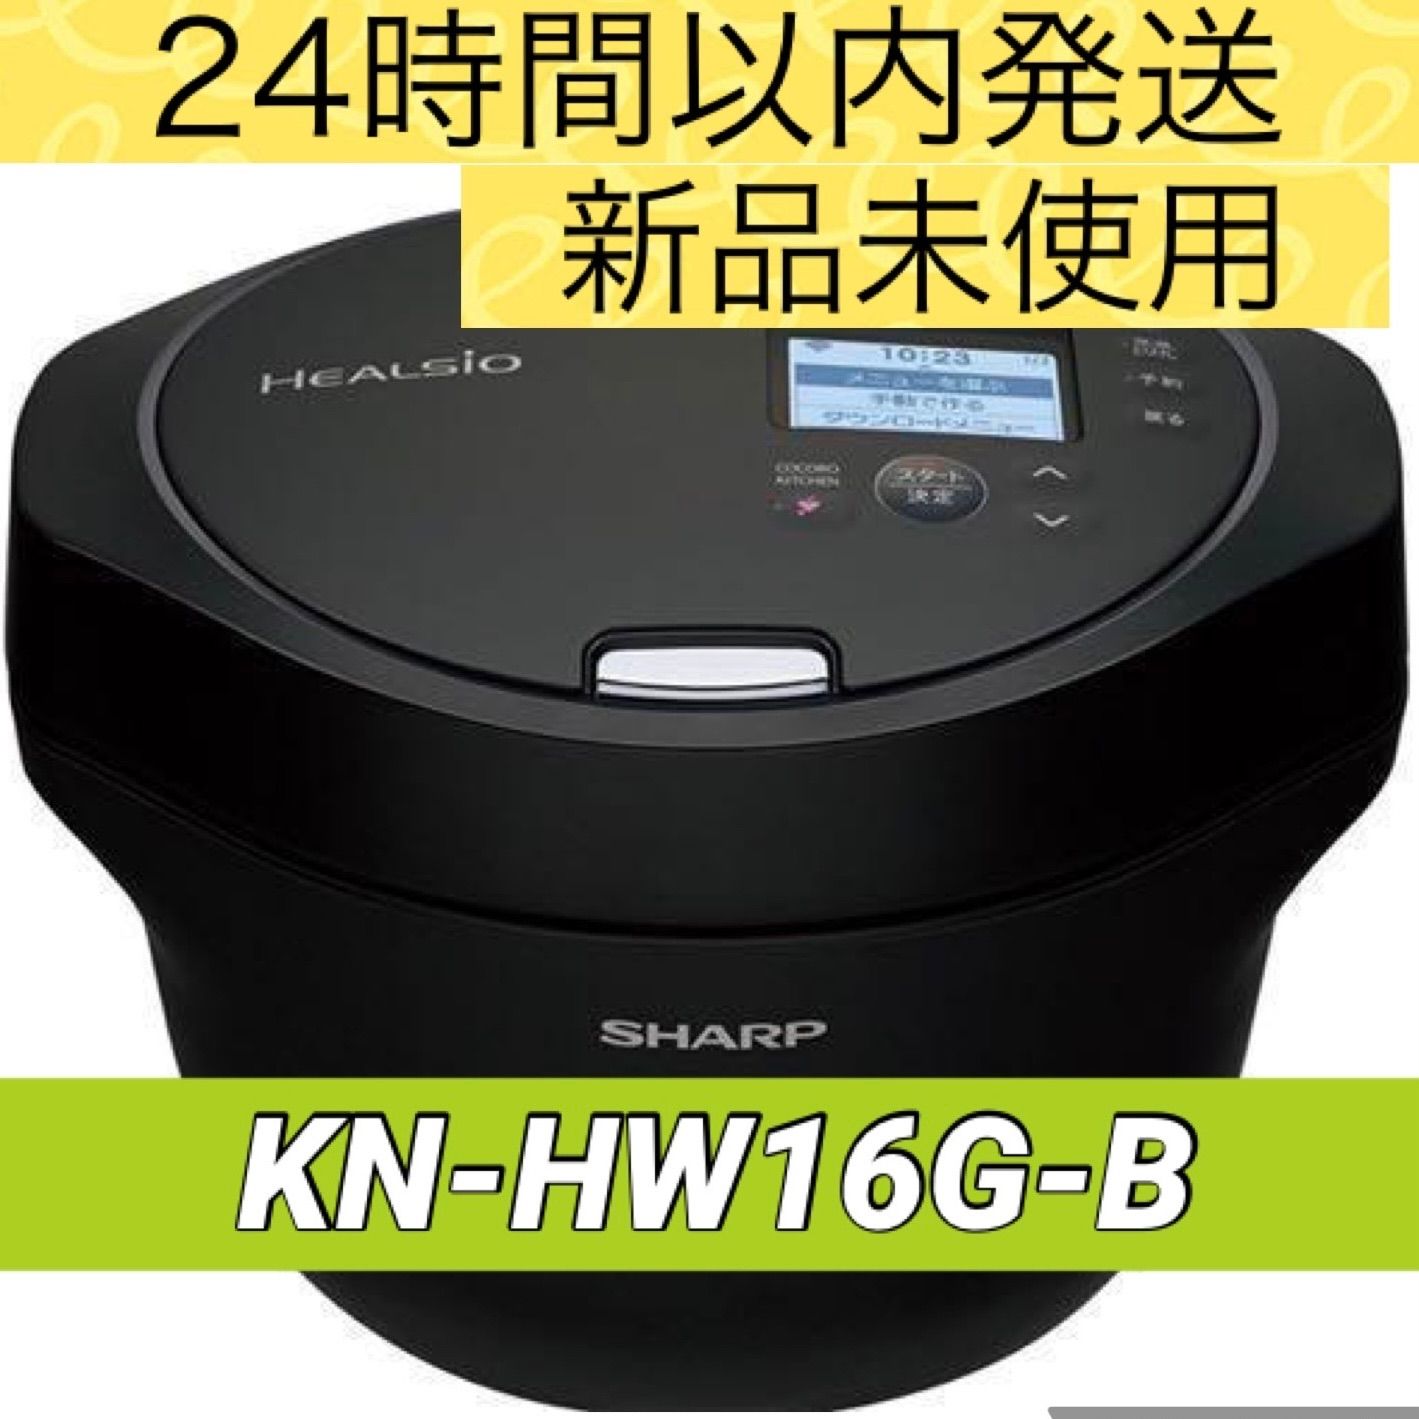 SHARPヘルシオホットクック KN-HW16G-B BLACK - 調理機器